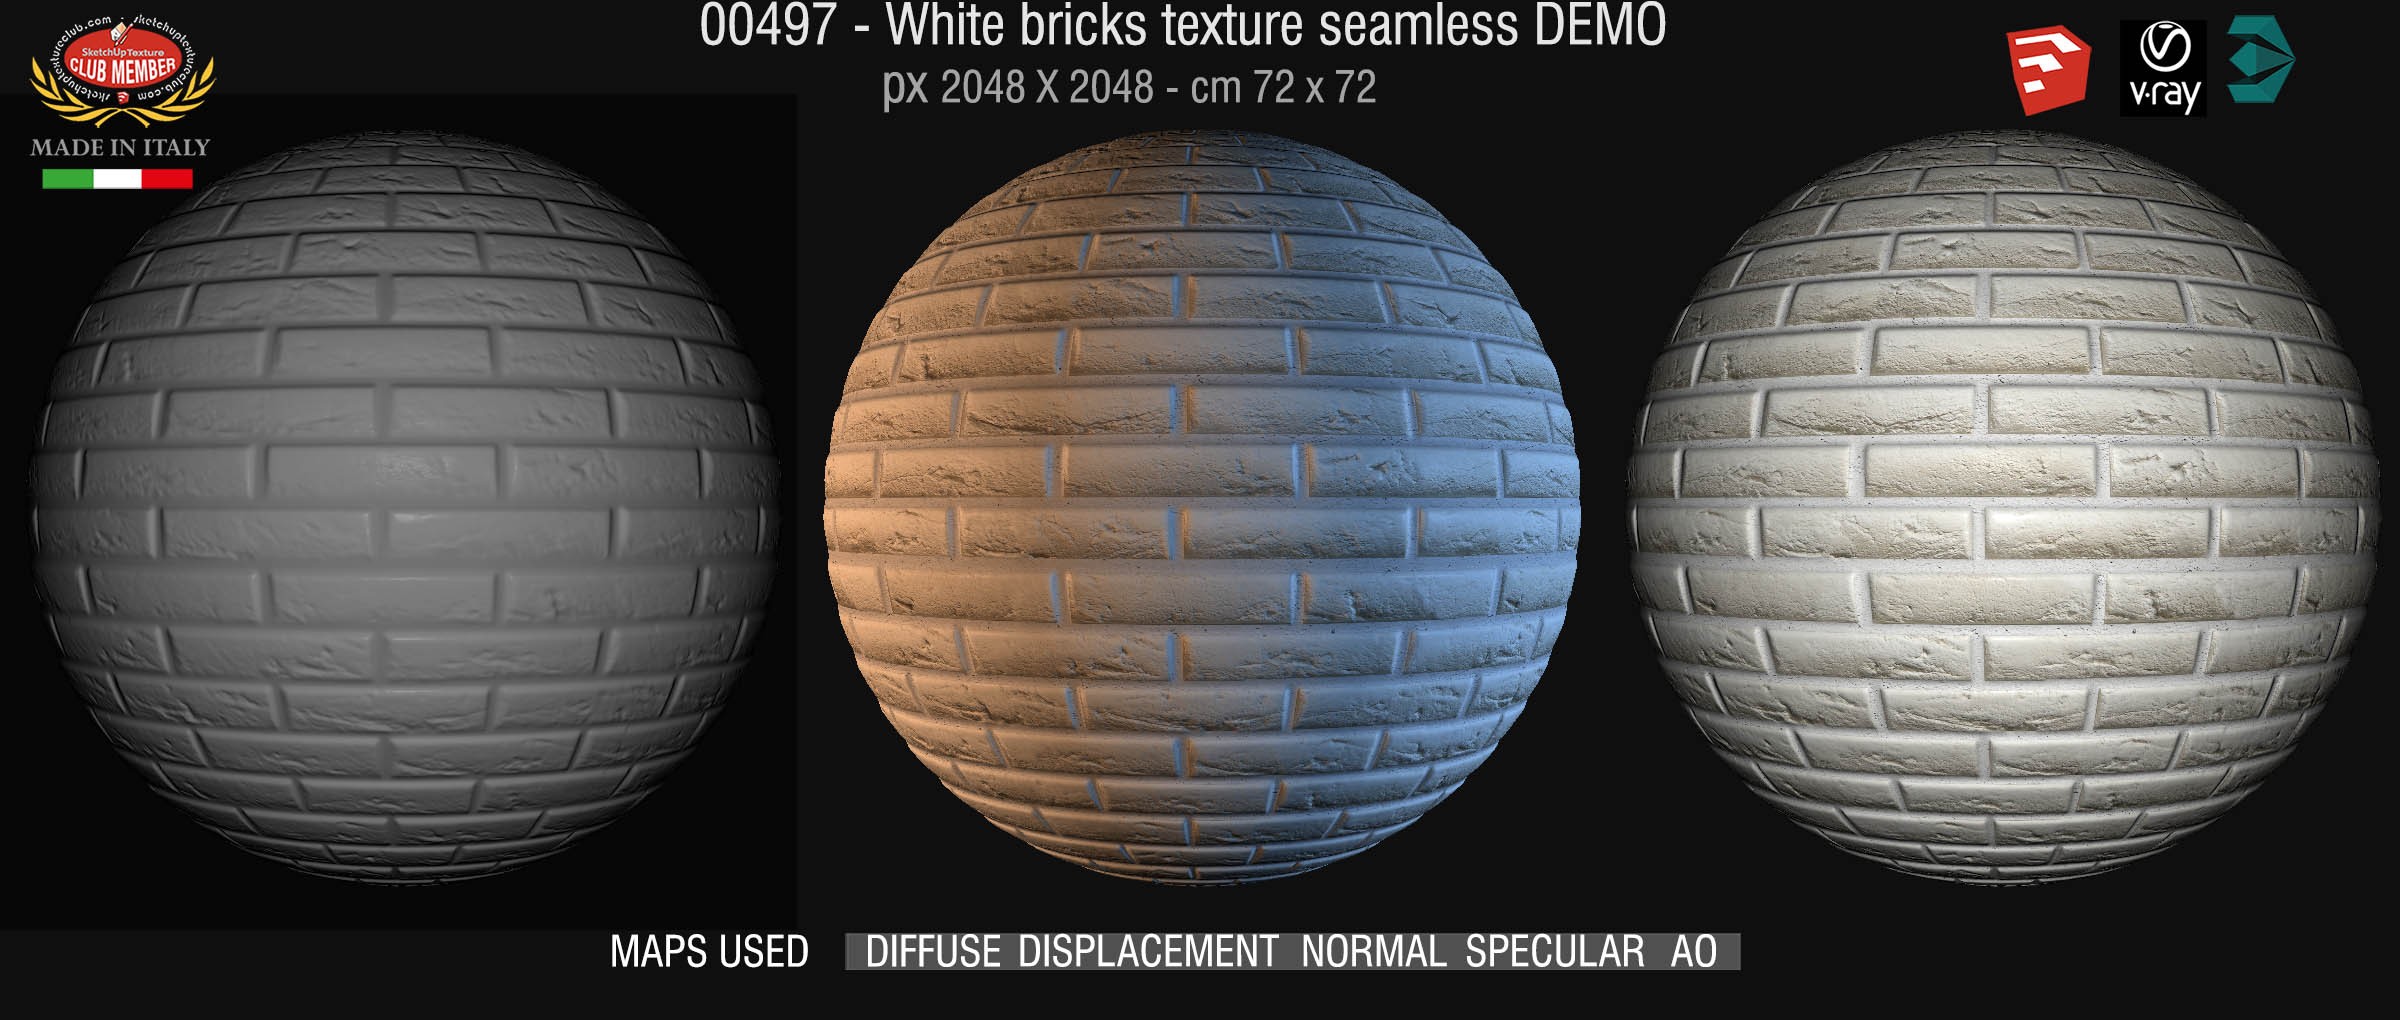 00497 White bricks texture seamless + maps DEMO